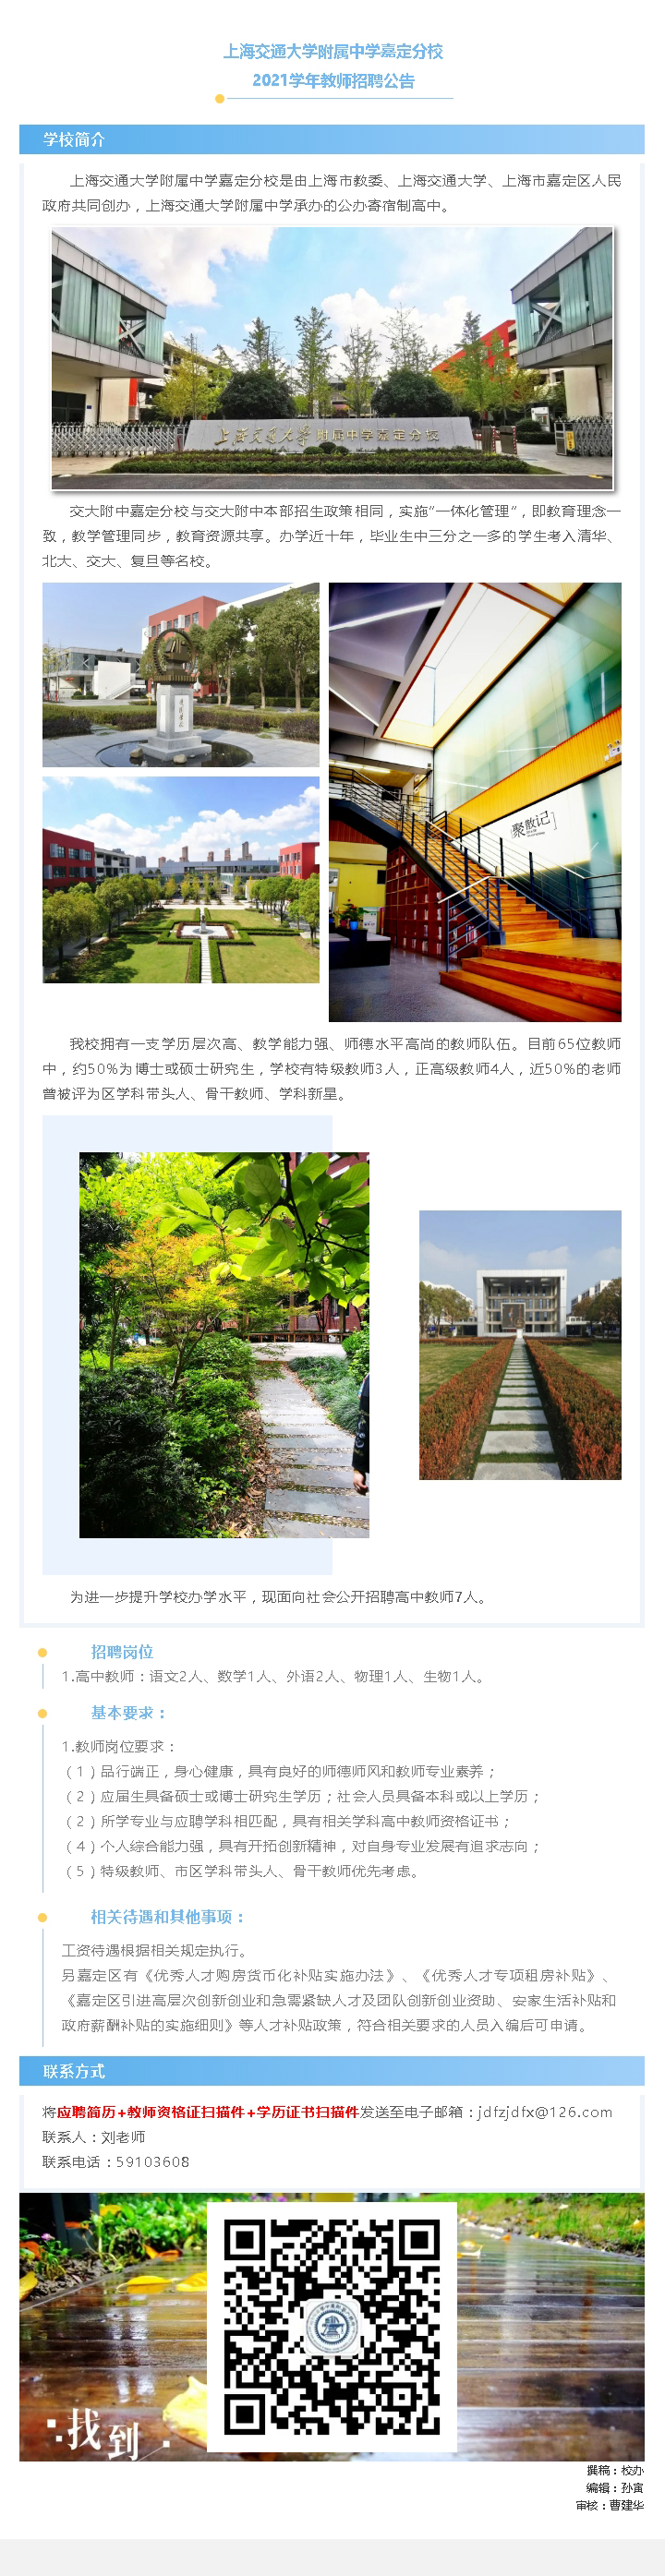 上海交通大学附属中学嘉定分校 2021学年教师招聘公告_20210315162625.jpg